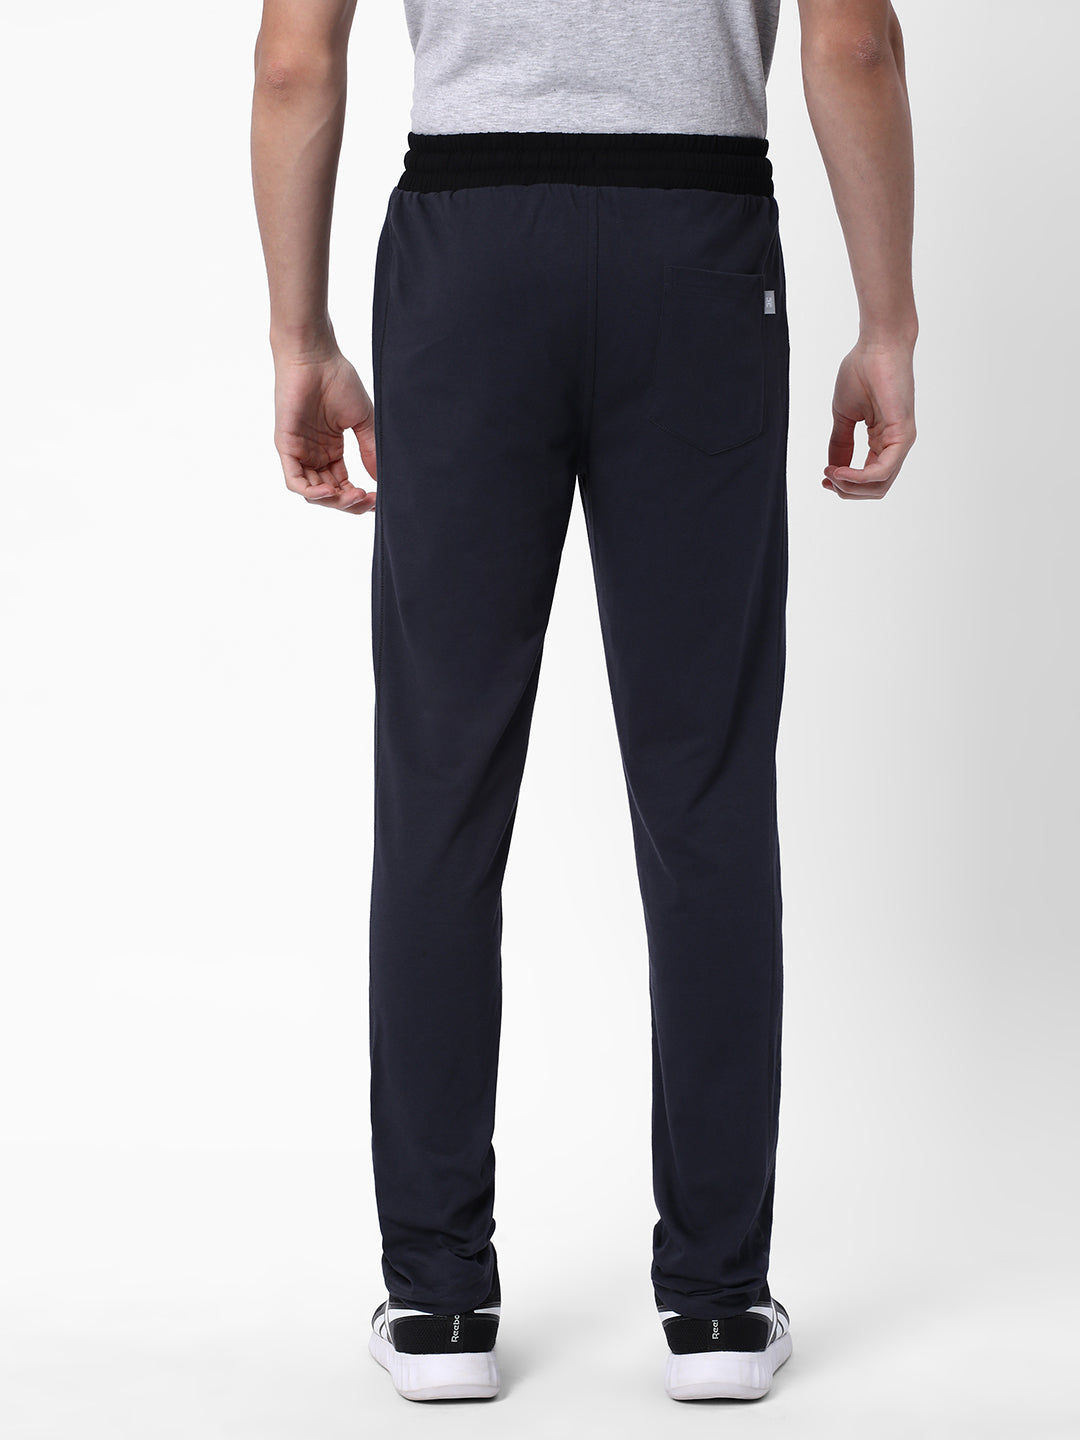 Slim Fit Track pants - Dark grey marl - Men | H&M IN